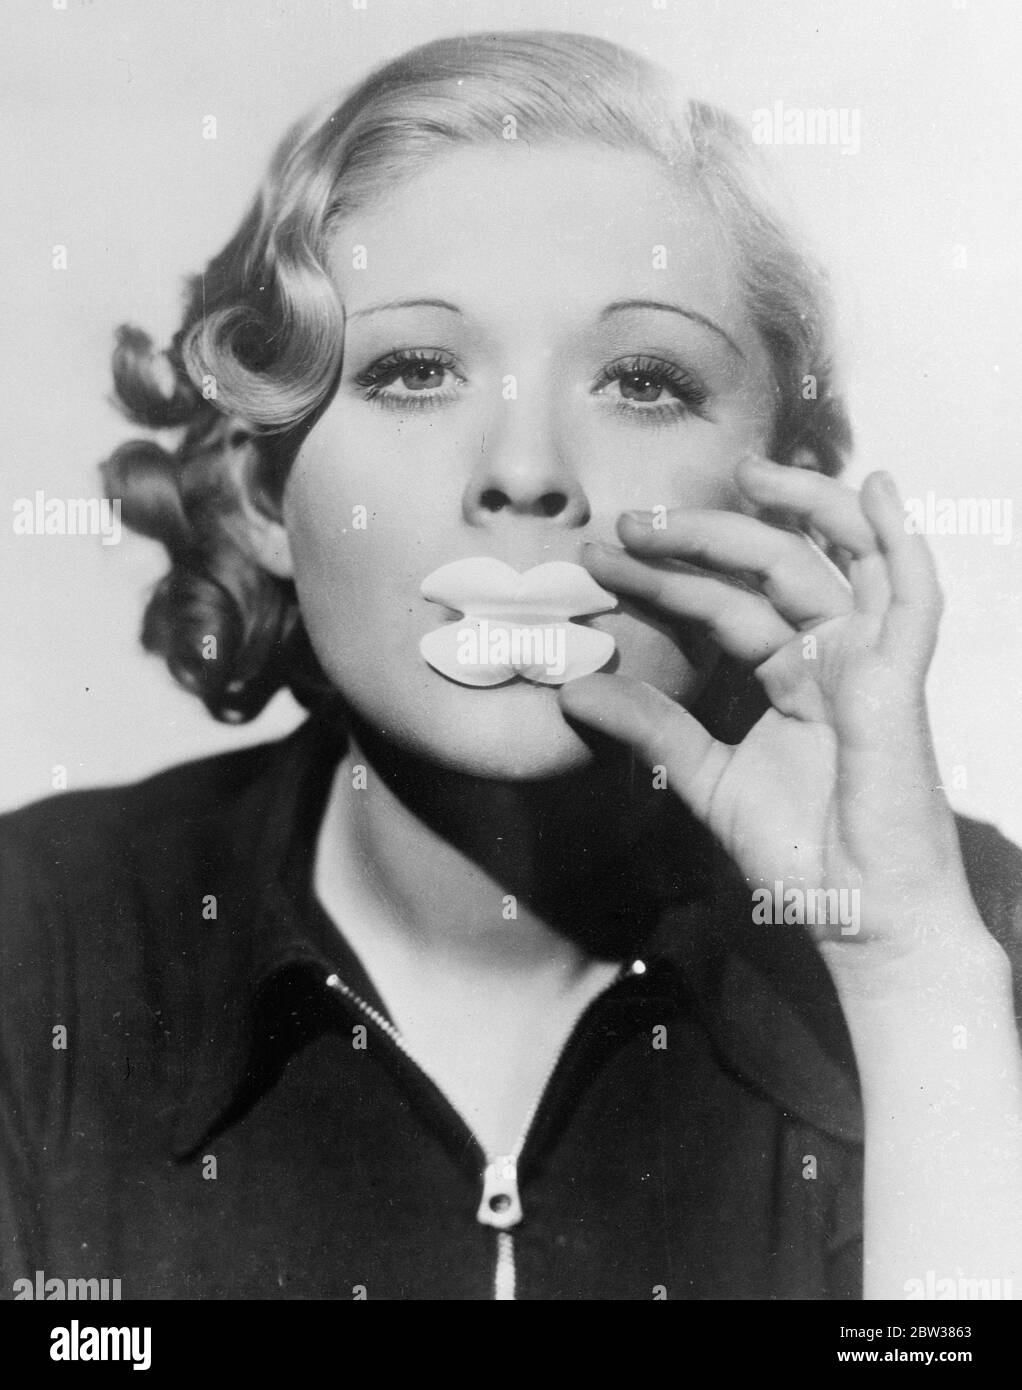 Anti-Lippenstift . Kleider jetzt nicht beschädigt werden. Um teure Stoffe zu sparen, die durch raue Lippen beschädigt werden, wenn Kleider angeprobt werden, hat ein Hollywood-Filmstudio ein neues Gerät eingeführt. Es nimmt die Form eines Schildes für die Lippen, die effektiv verhindert, dass die Rouge von Verschmutzung der Kleidungsstücke . Foto zeigt Dorothy Dell, die Bildschirmdarstellerin, demonstriert die neue Lippe Schild. 10 Mai 1934 Stockfoto